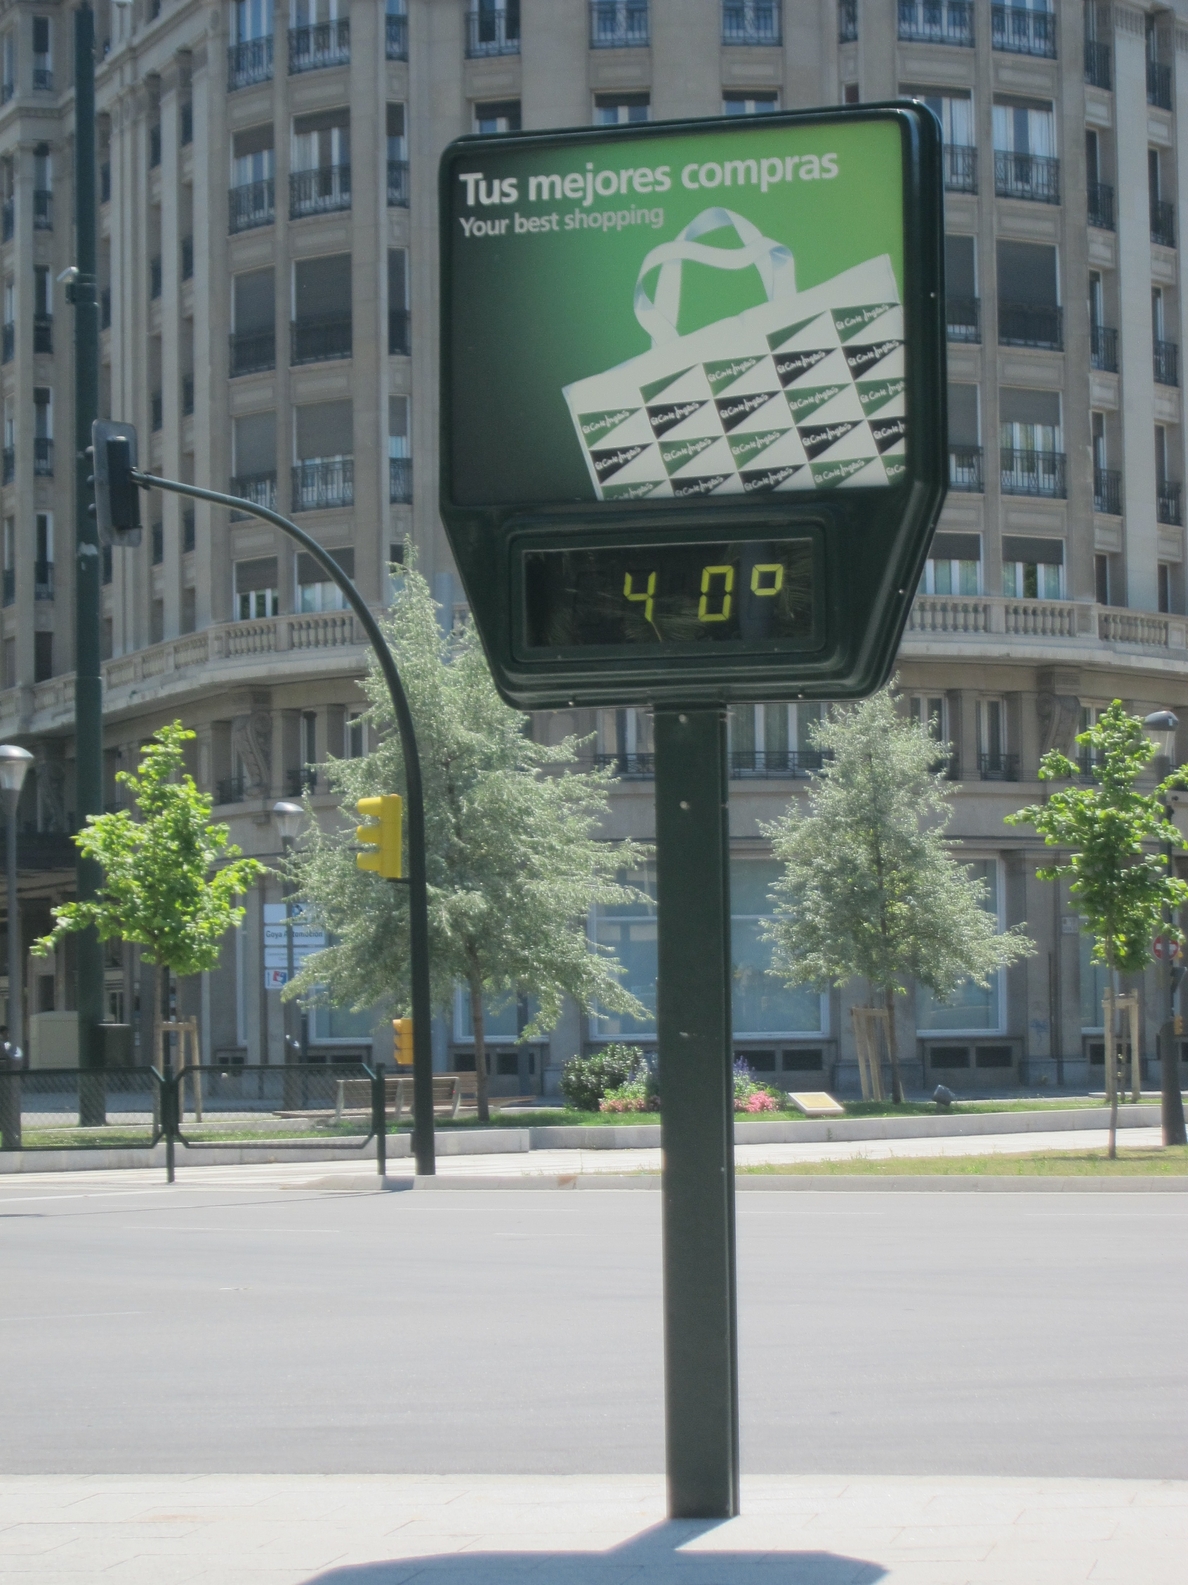 La Comunidad aragonesa continúa en alerta por altas temperaturas, se alcanzarán los 40 grados